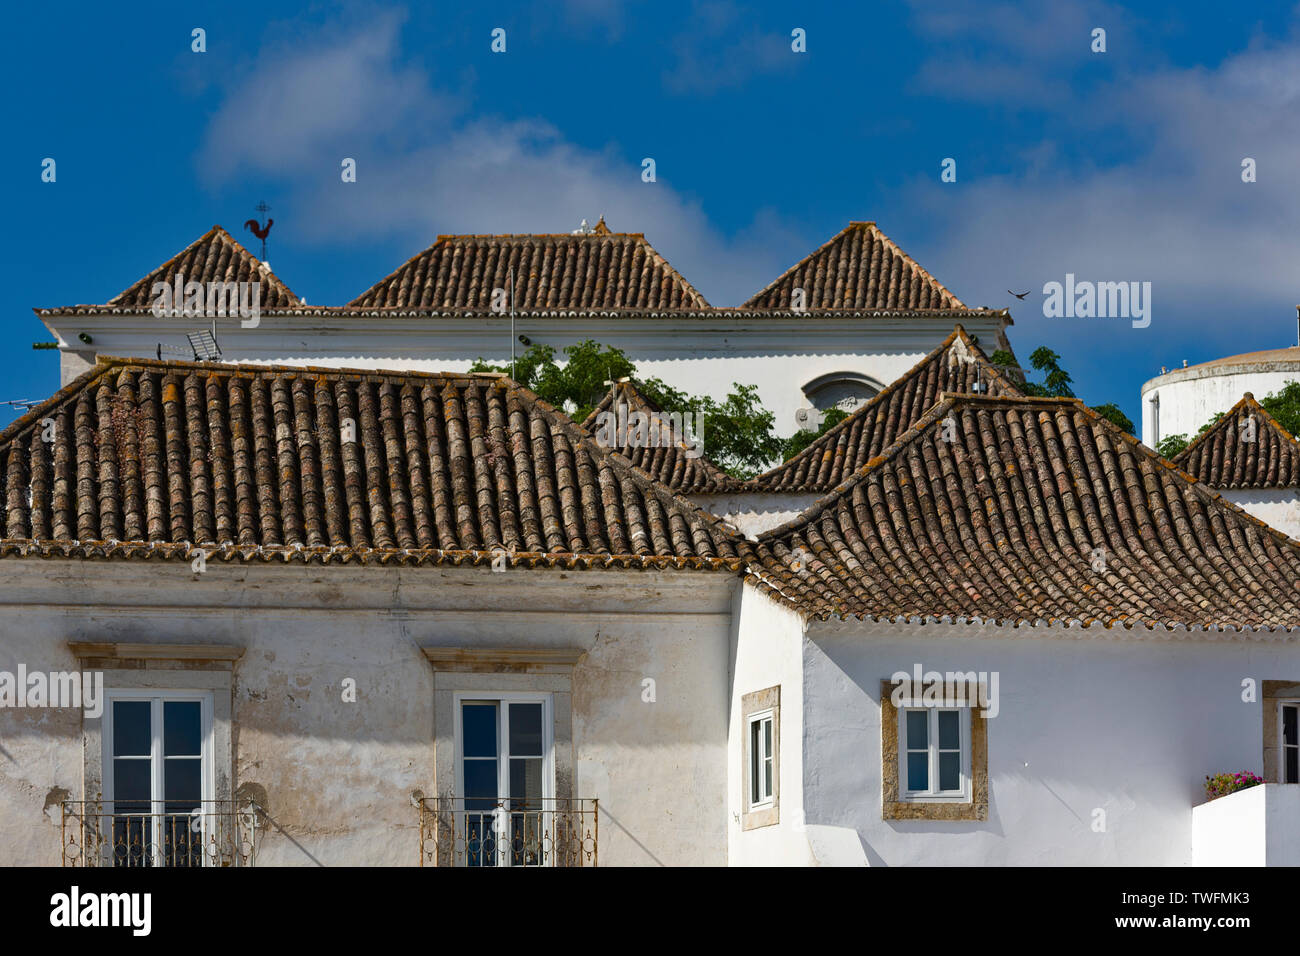 Le toit à quatre pans témoigne d'une forte influence orientale dans l'architecture emblématique de la ville de Tavira, Algarve, Portugal Banque D'Images